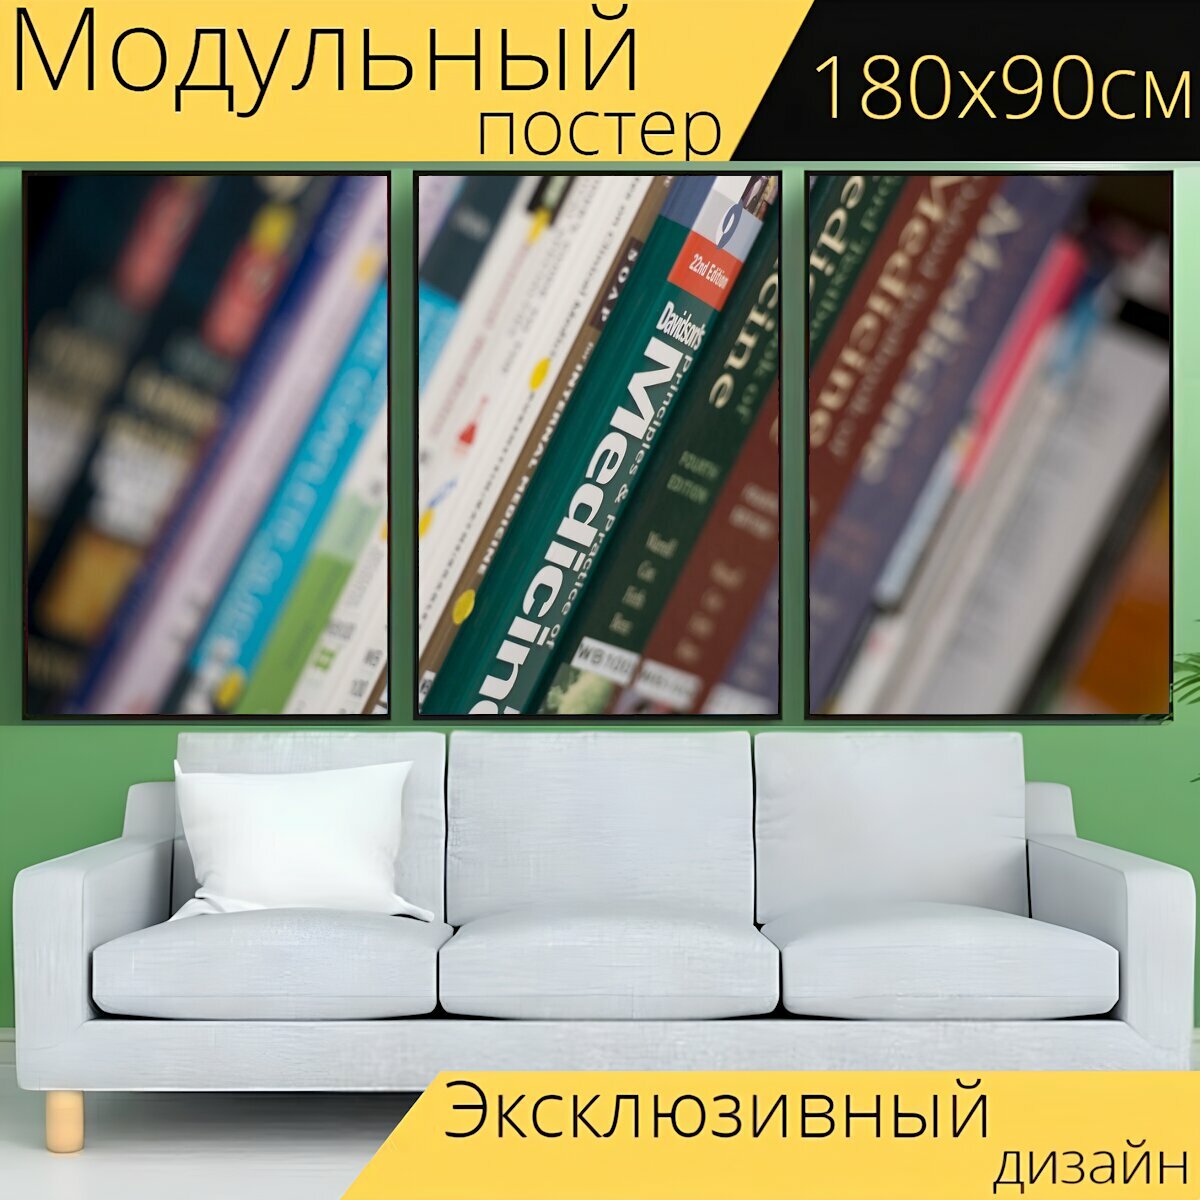 Модульный постер "Книги, библиотека, книжная полка" 180 x 90 см. для интерьера